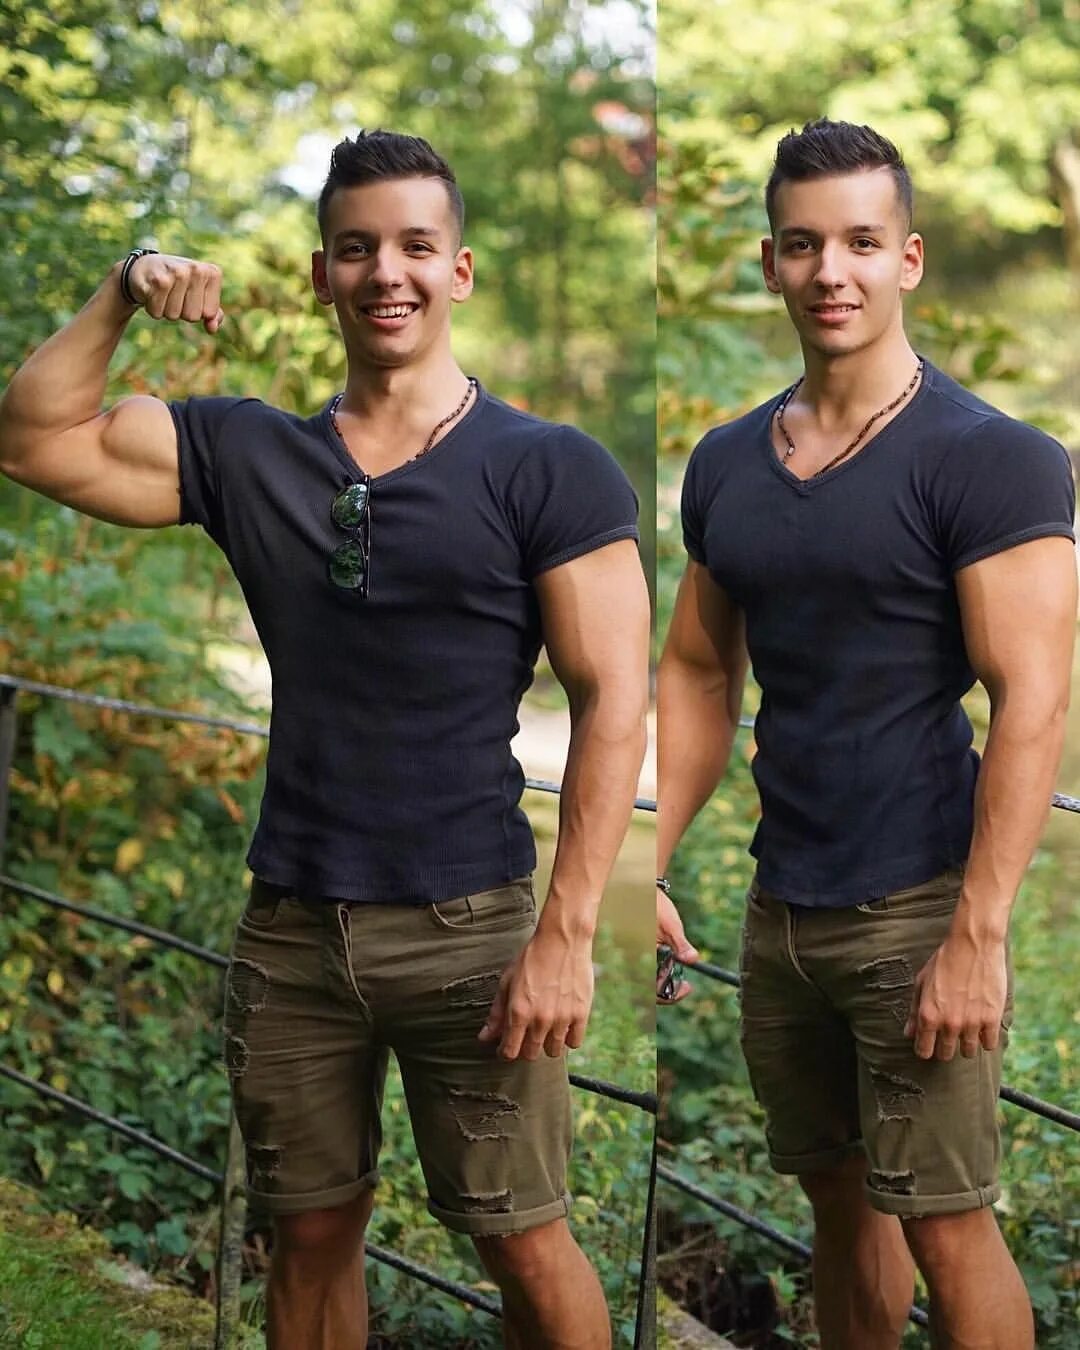 Radoslav Raychev. Парень 22 года. Фото мужчины 22 года. Как выглядят парни в 22 года. 22 июля мужчина